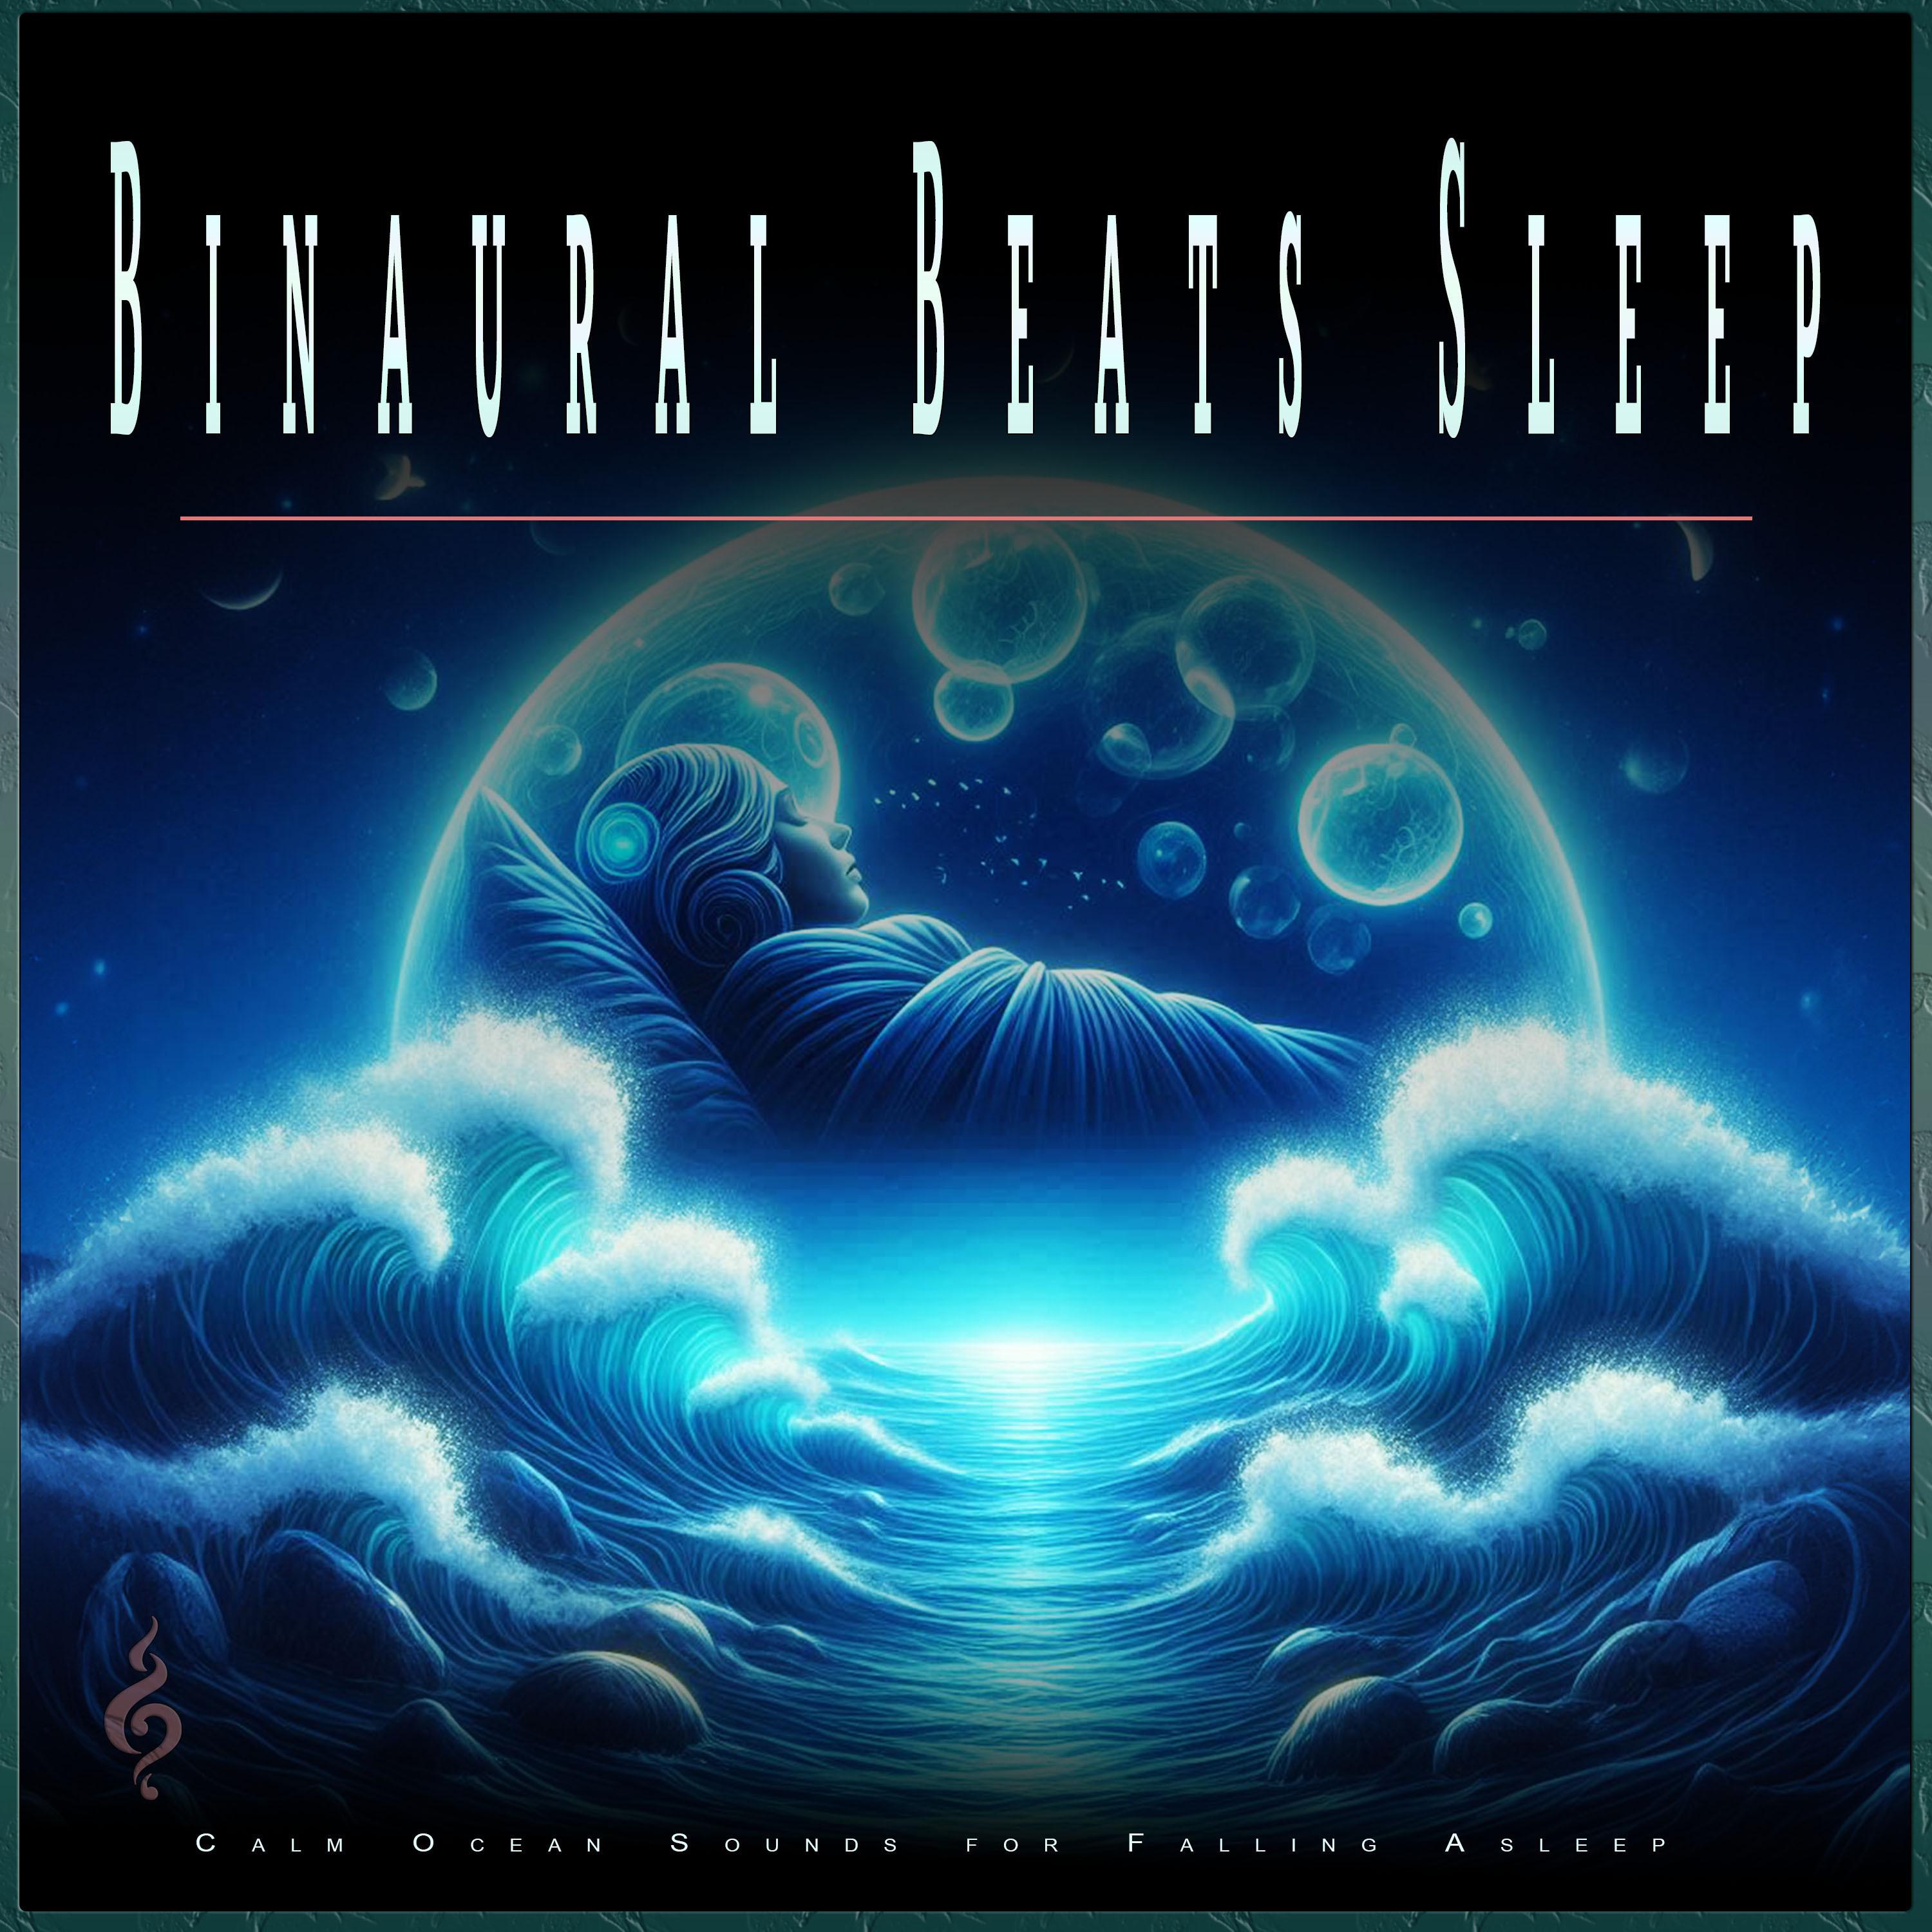 Ambient Sleeping Music - Binaural Beats Sleeping Music